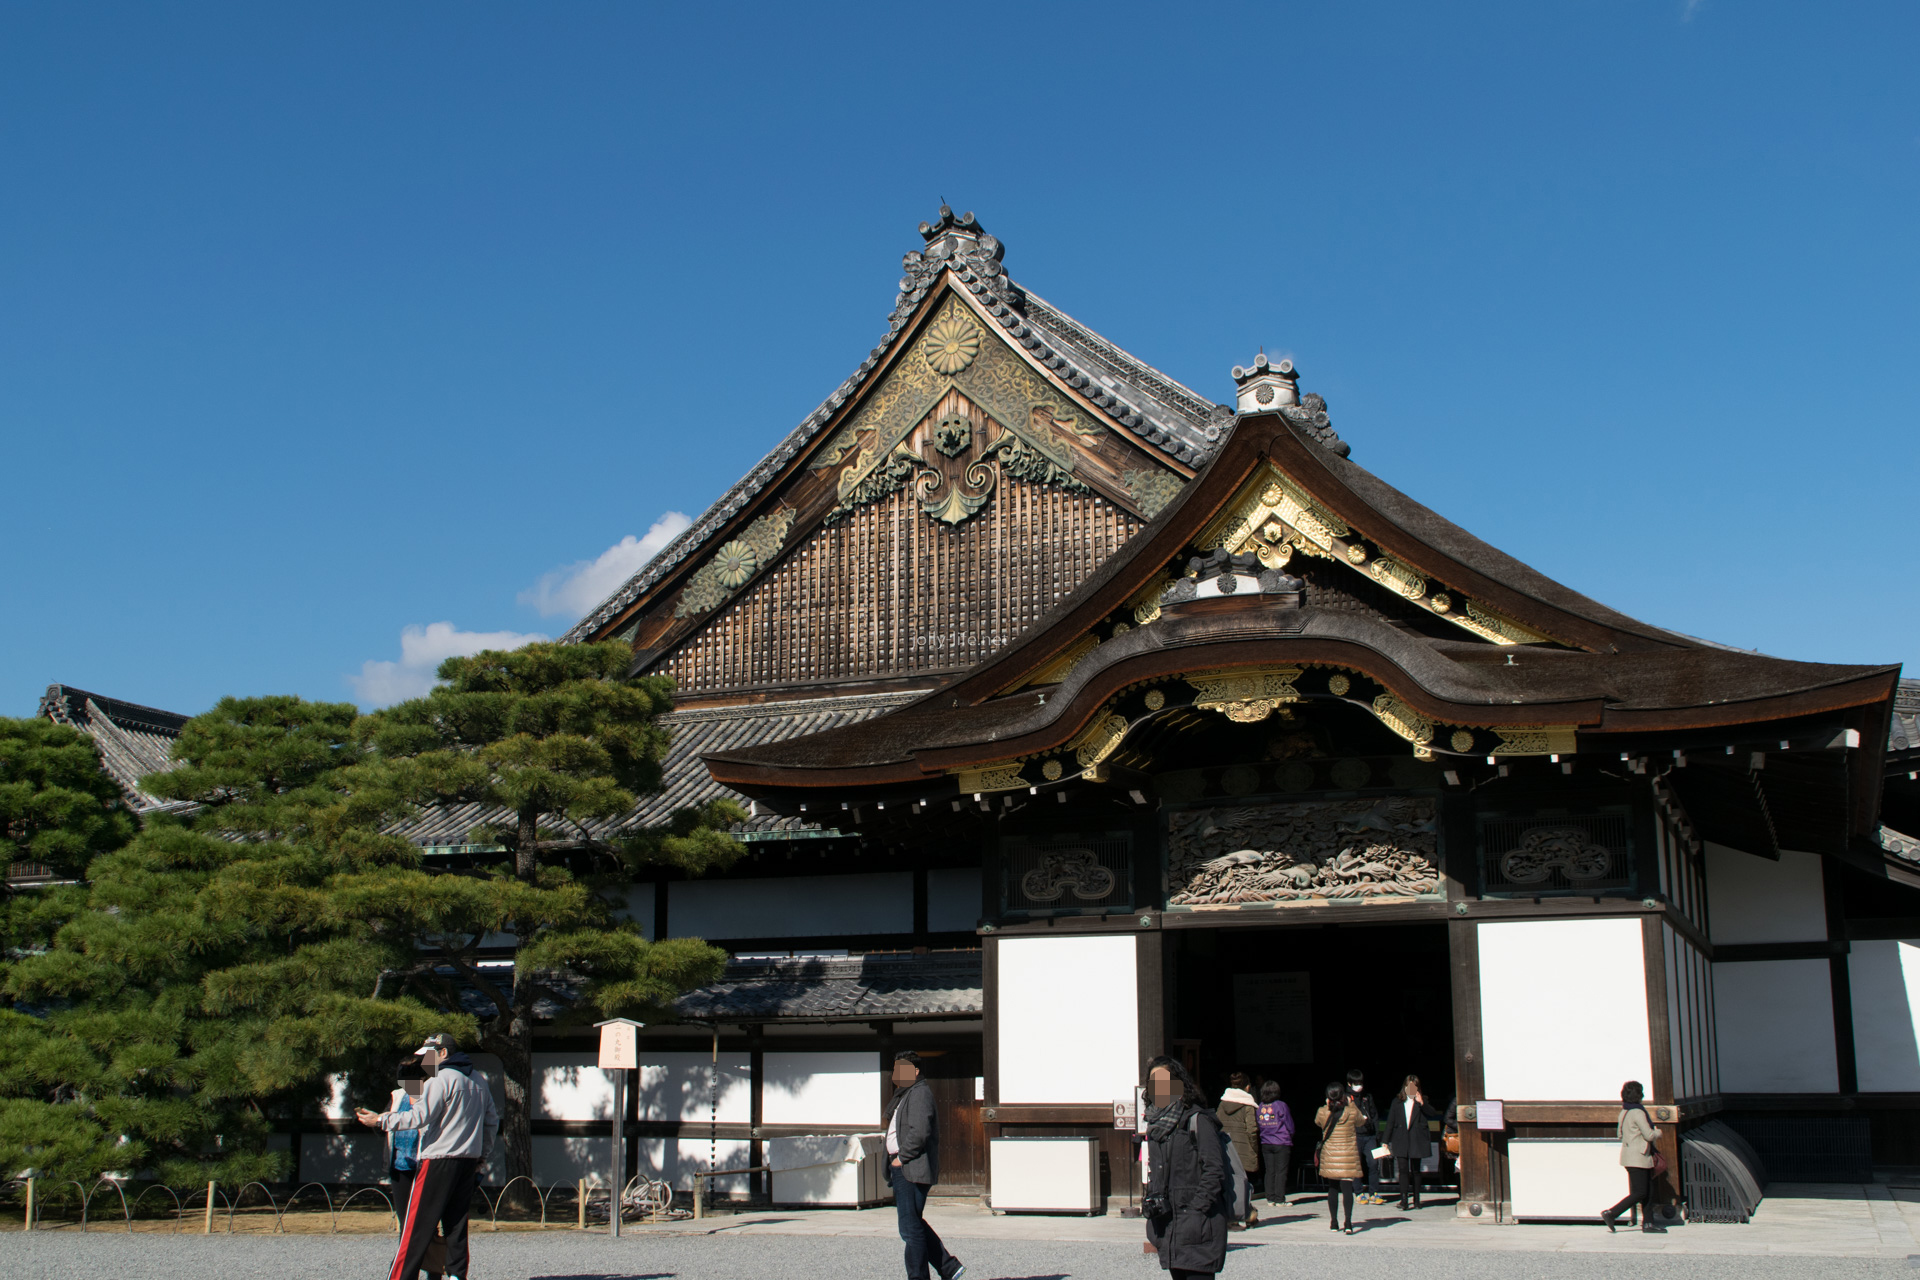 京都二条城の見どころ 周辺ランチから人気のライトアップもご紹介 Travelnote トラベルノート